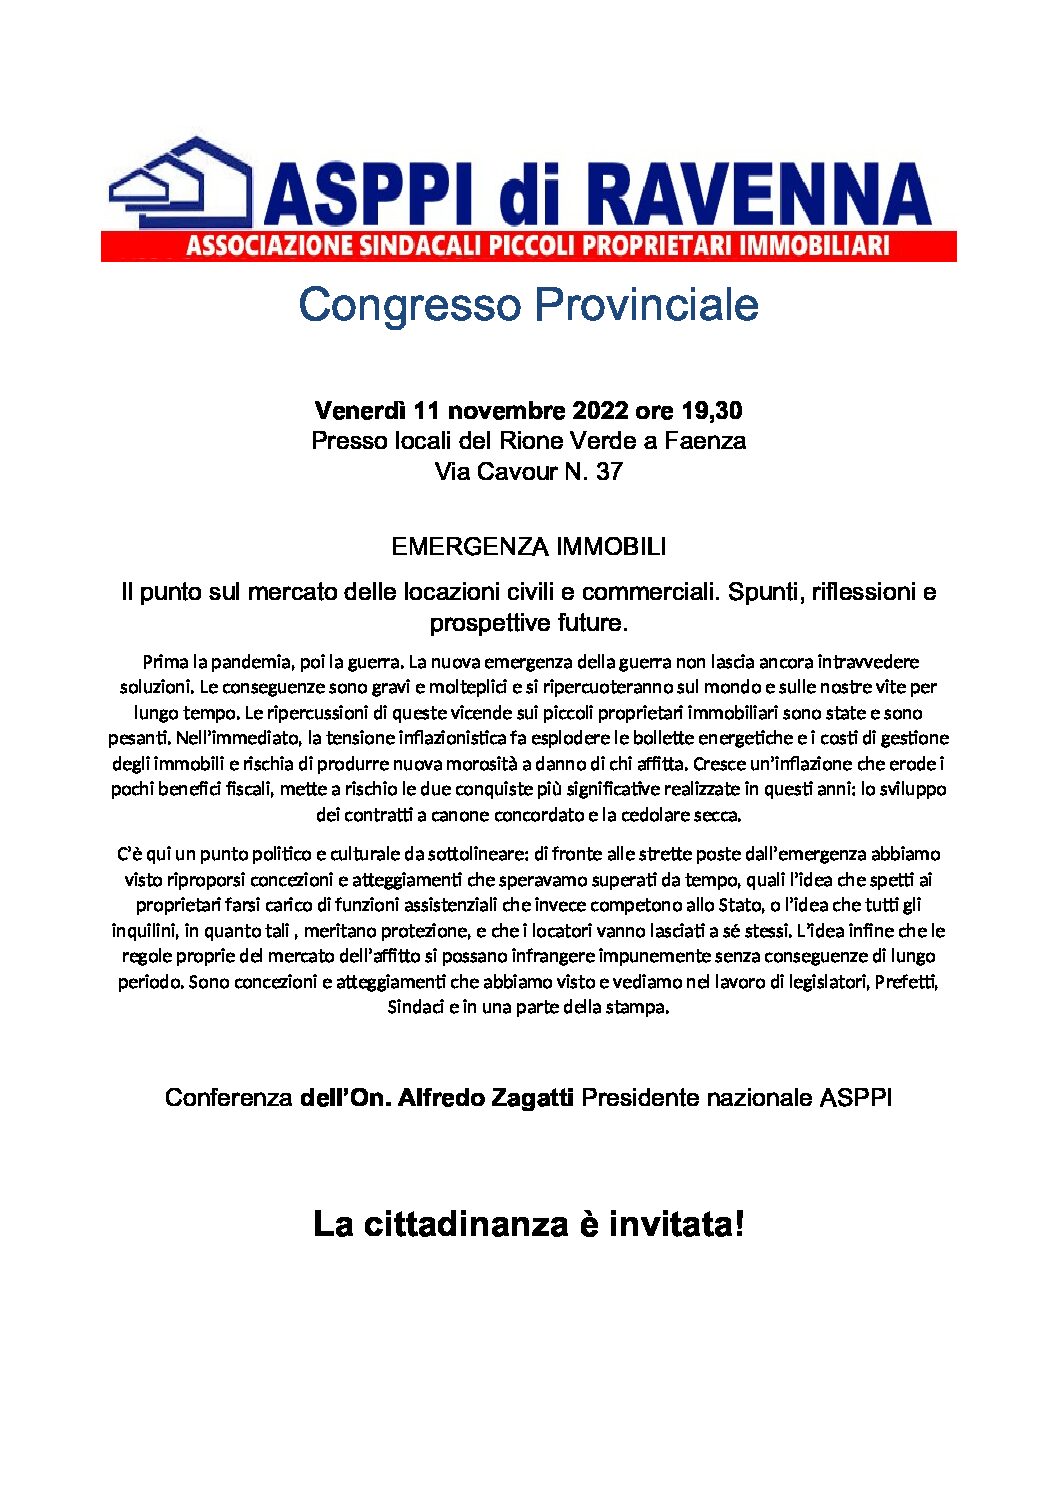 Congresso Provinciale ASPPI – 11 novembre 2022